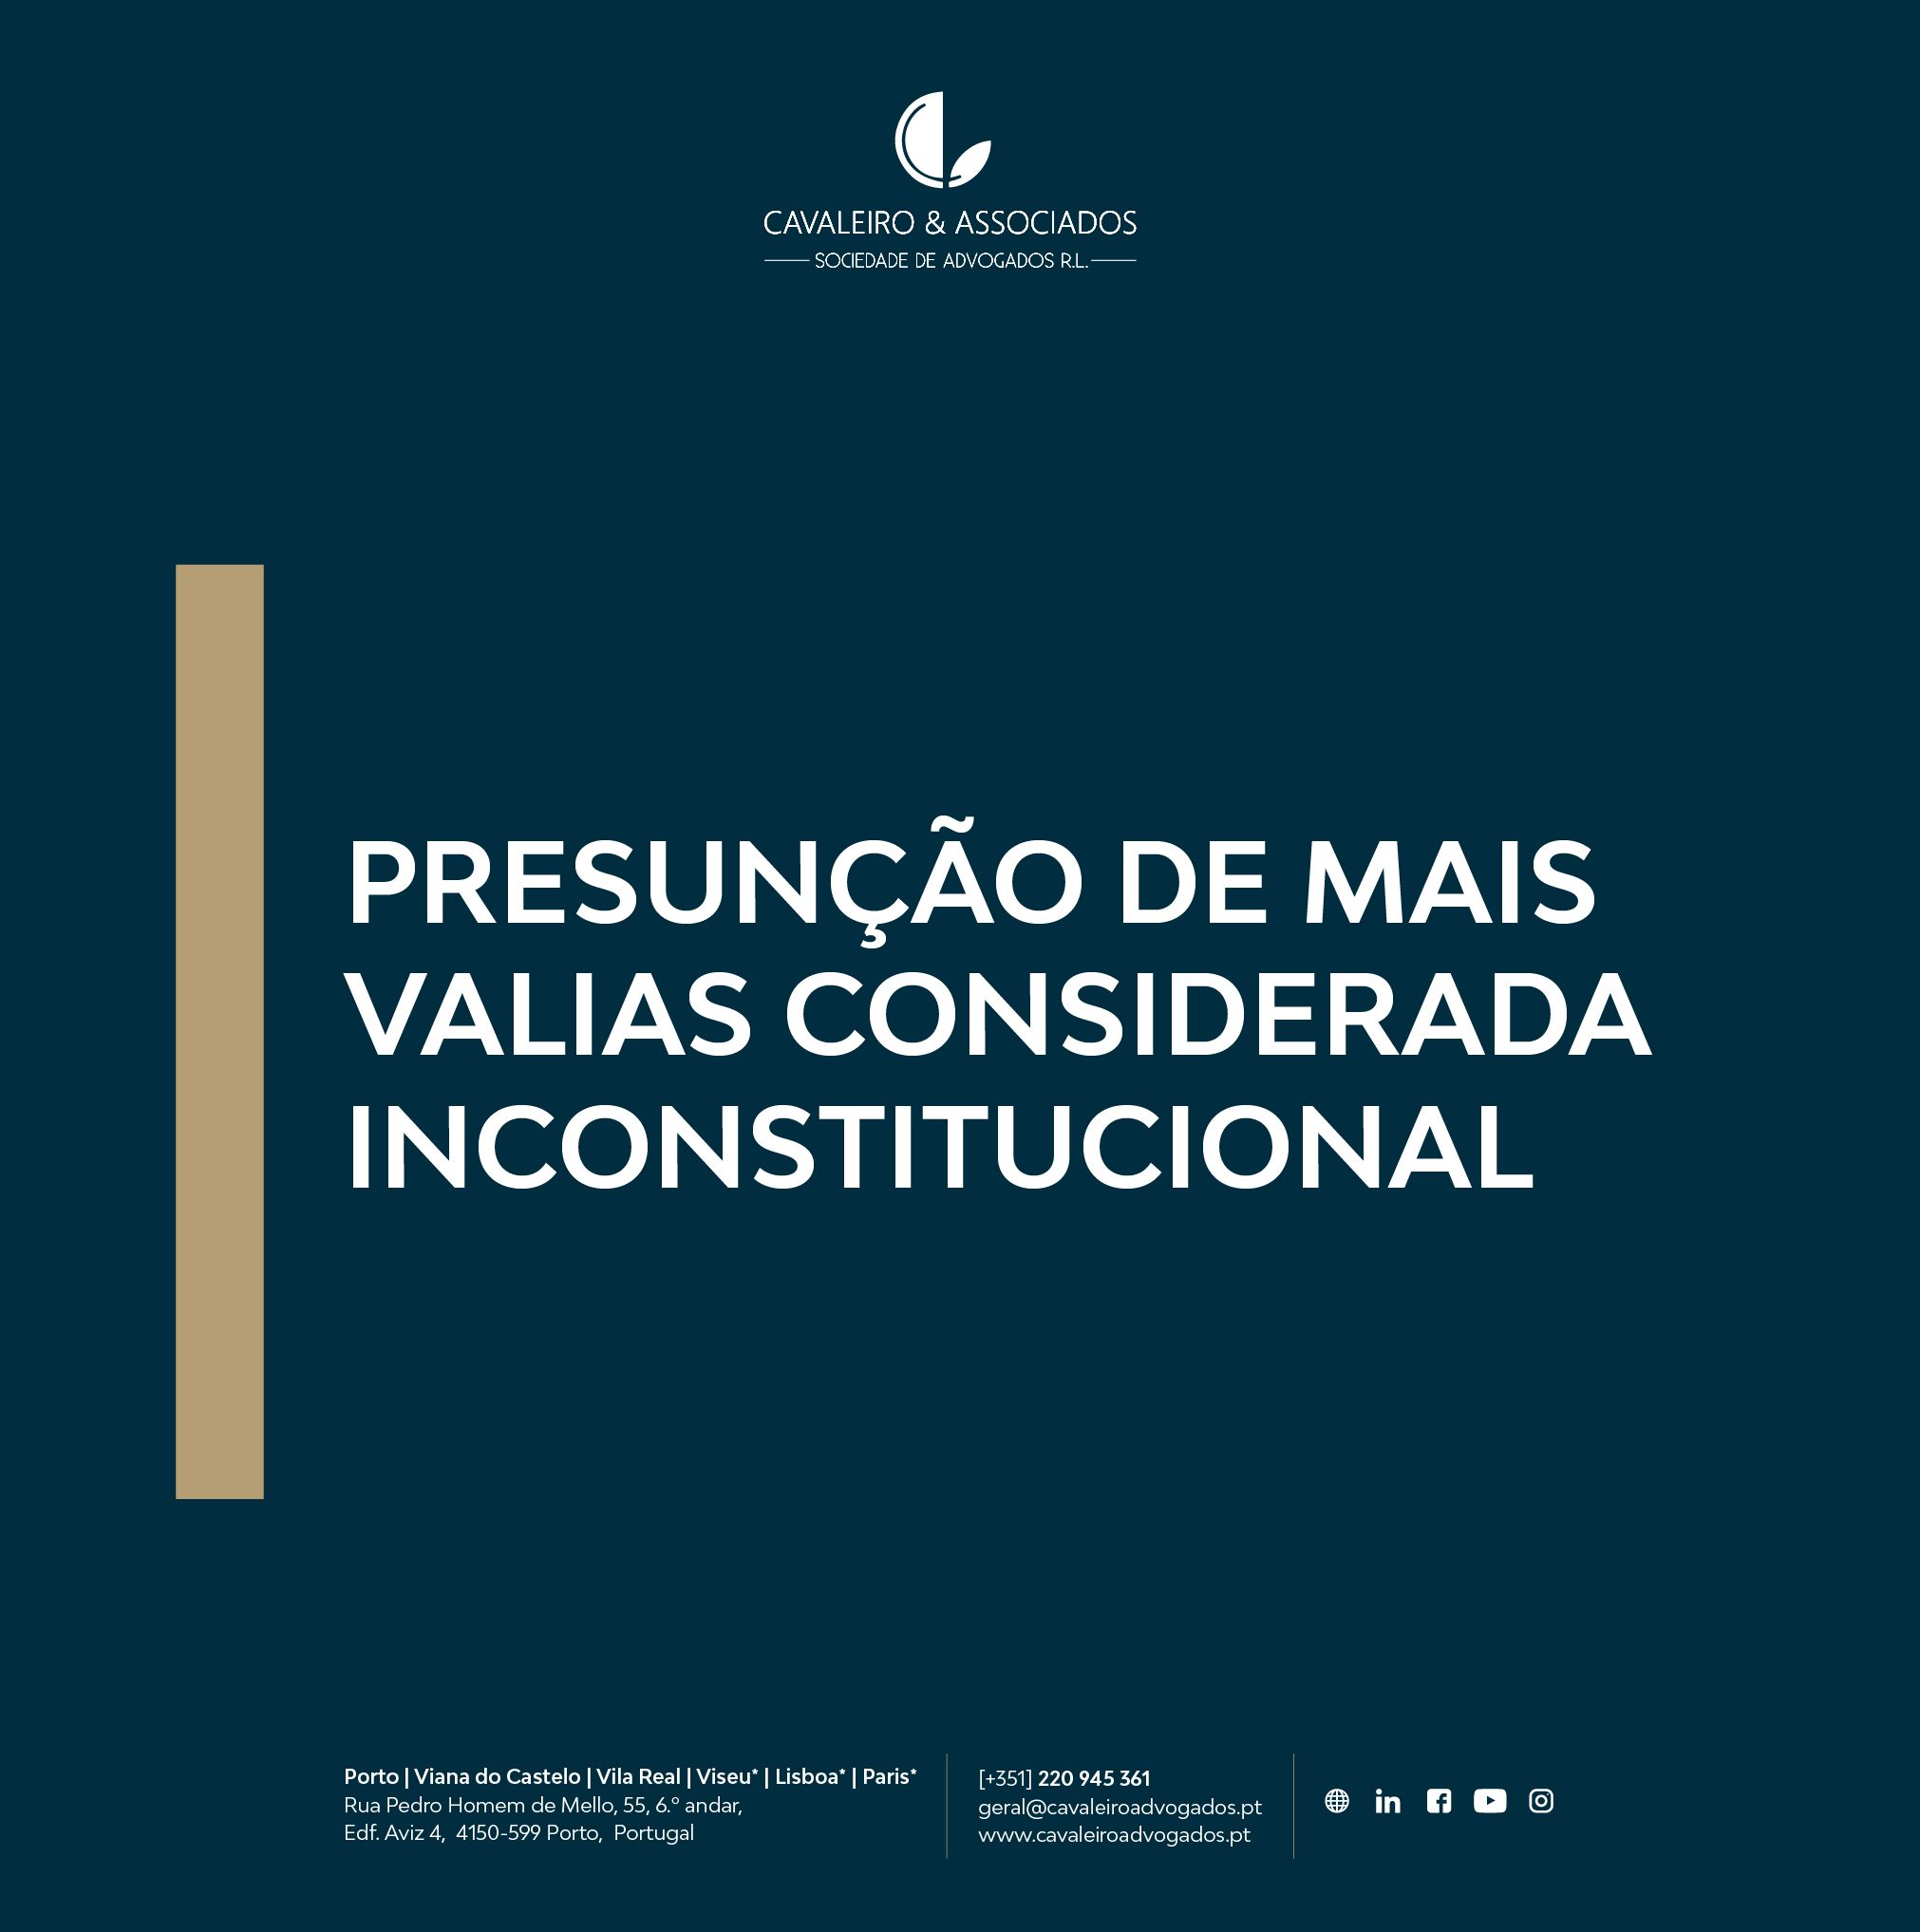 PRESUNÇÃO DE MAIS VALIAS CONSIDERADA INCONSTITUCIONAL